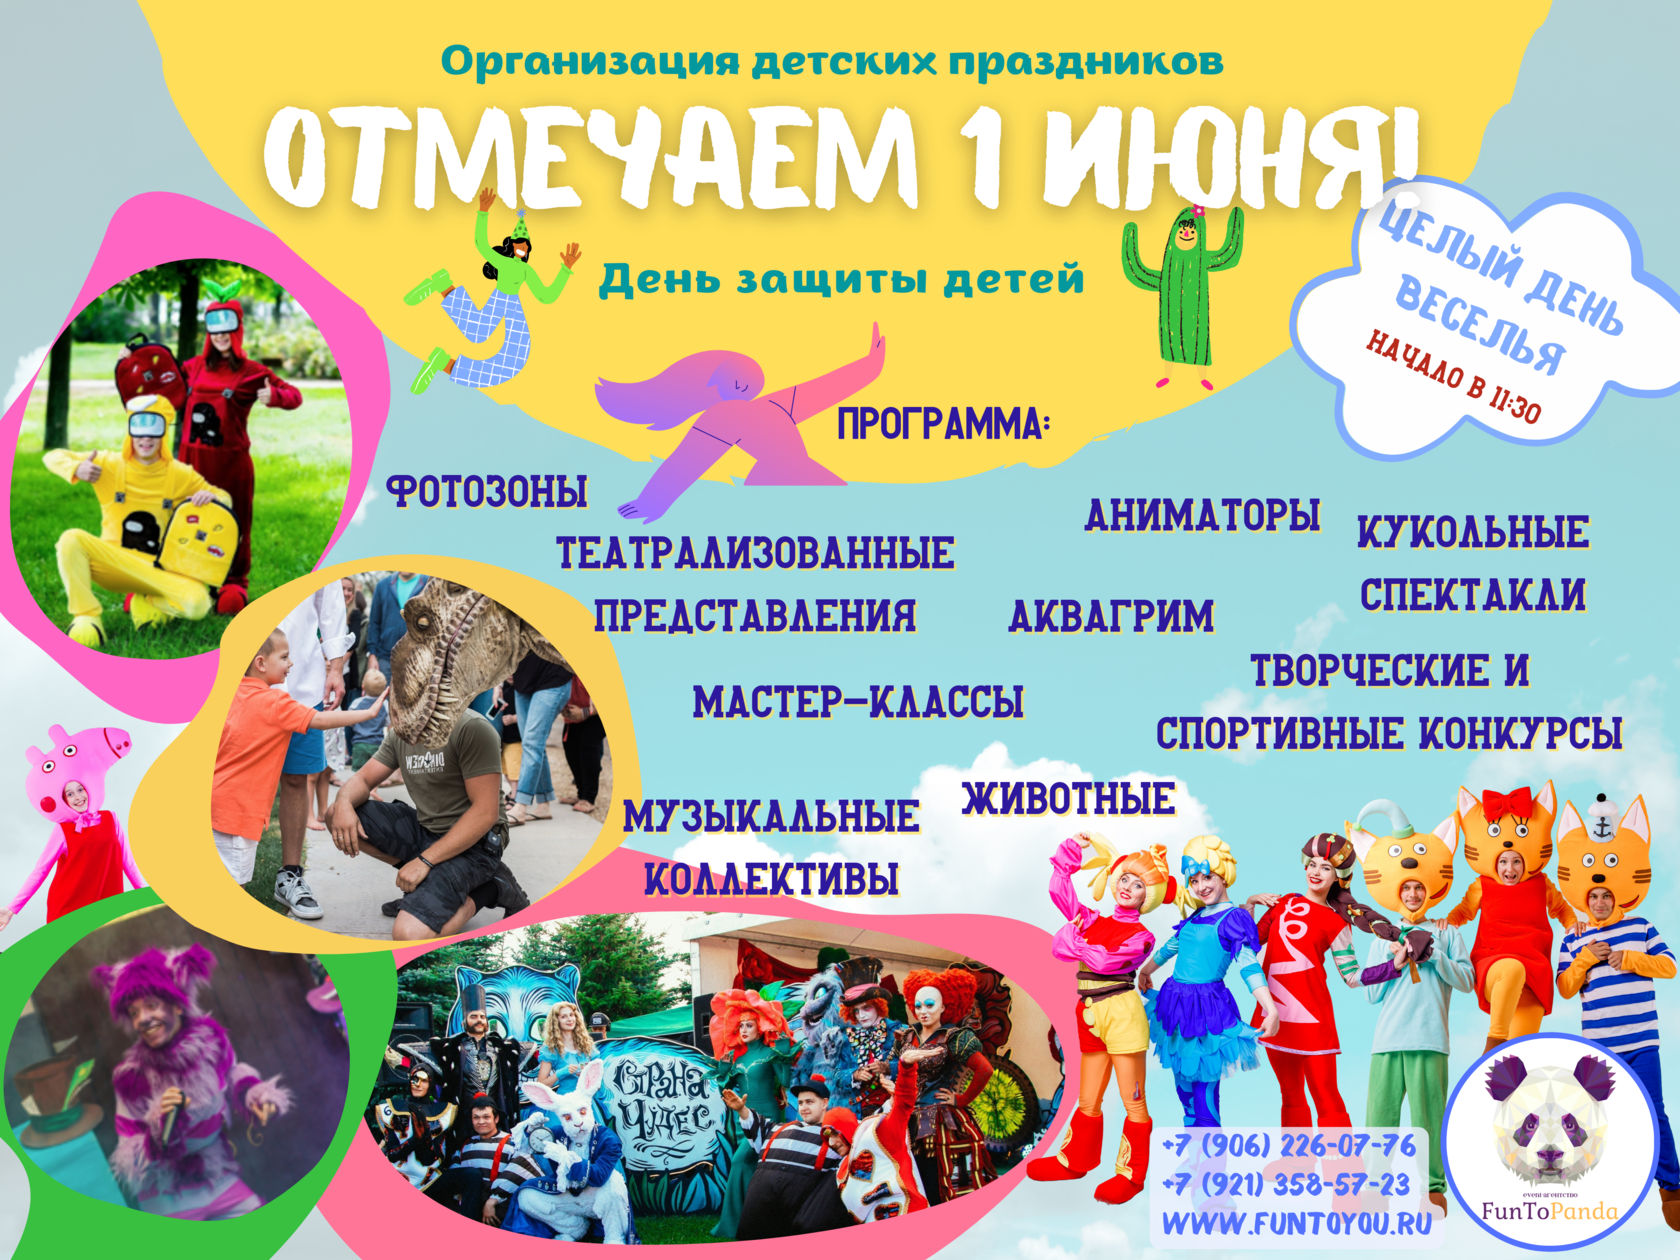 Мероприятия в красноярске на выходные. Реклама организации спортивного праздника корпоратива.